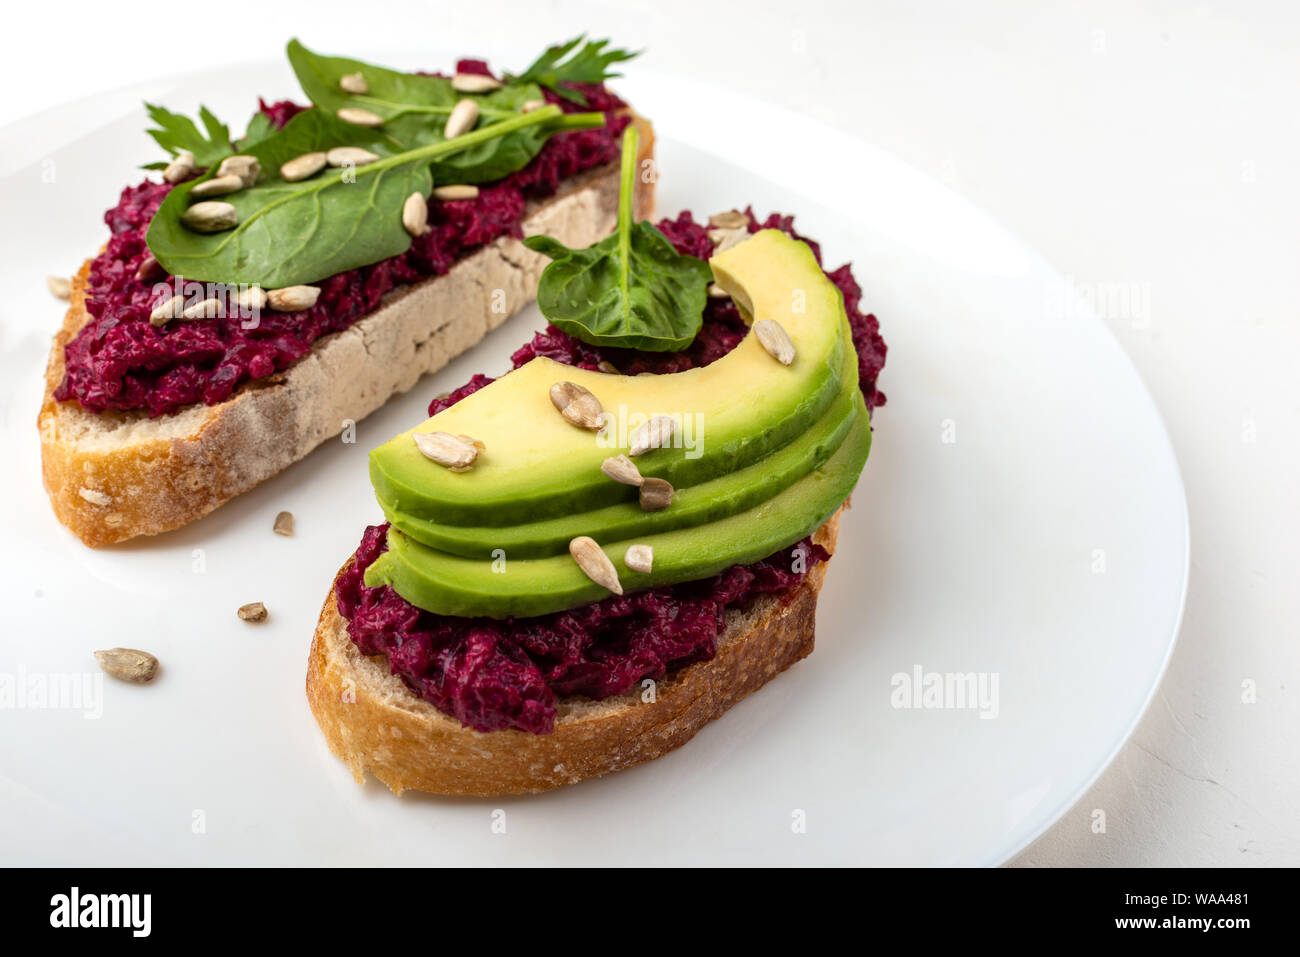 Bruschette con barbabietola hummus, avocado, spinaci e semi su una piastra bianca su sfondo bianco. Foto Stock